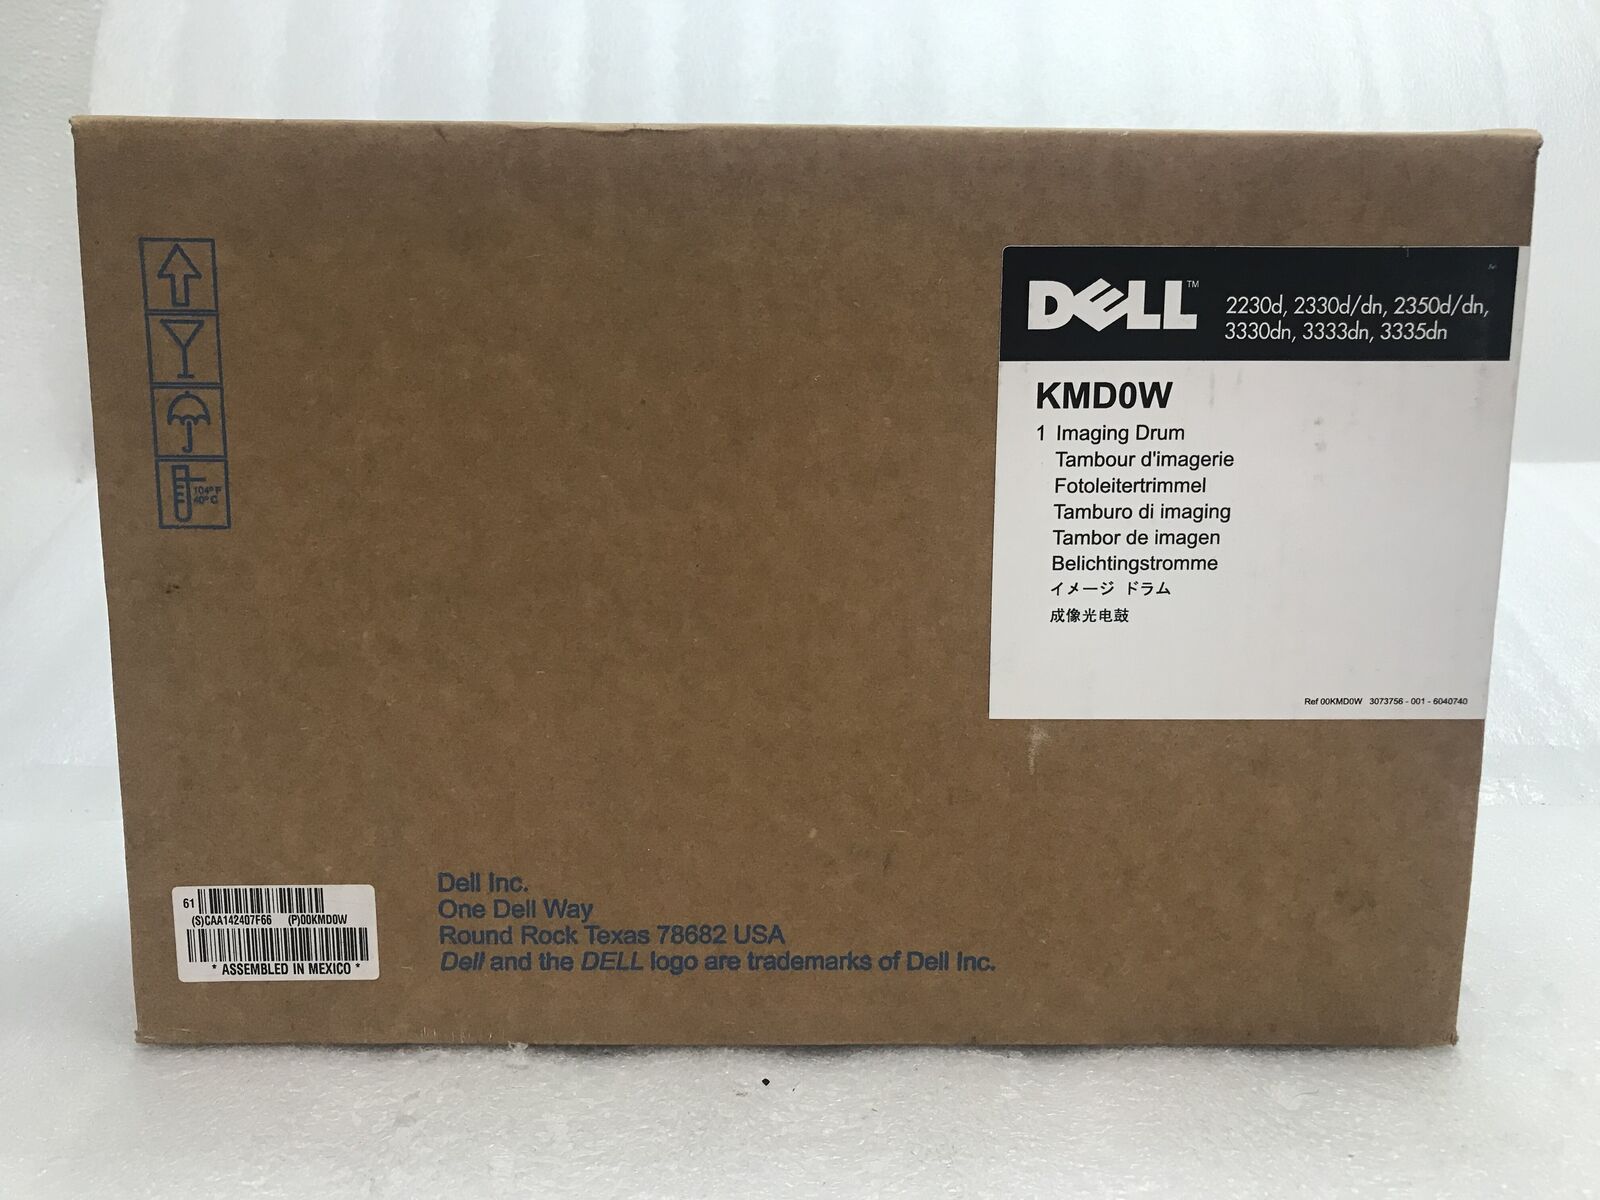 New Genuine Dell Imaging Drum KMD0W 2230d,2330d/dn,2350d/dn,3330dn,3333dn,3335dn